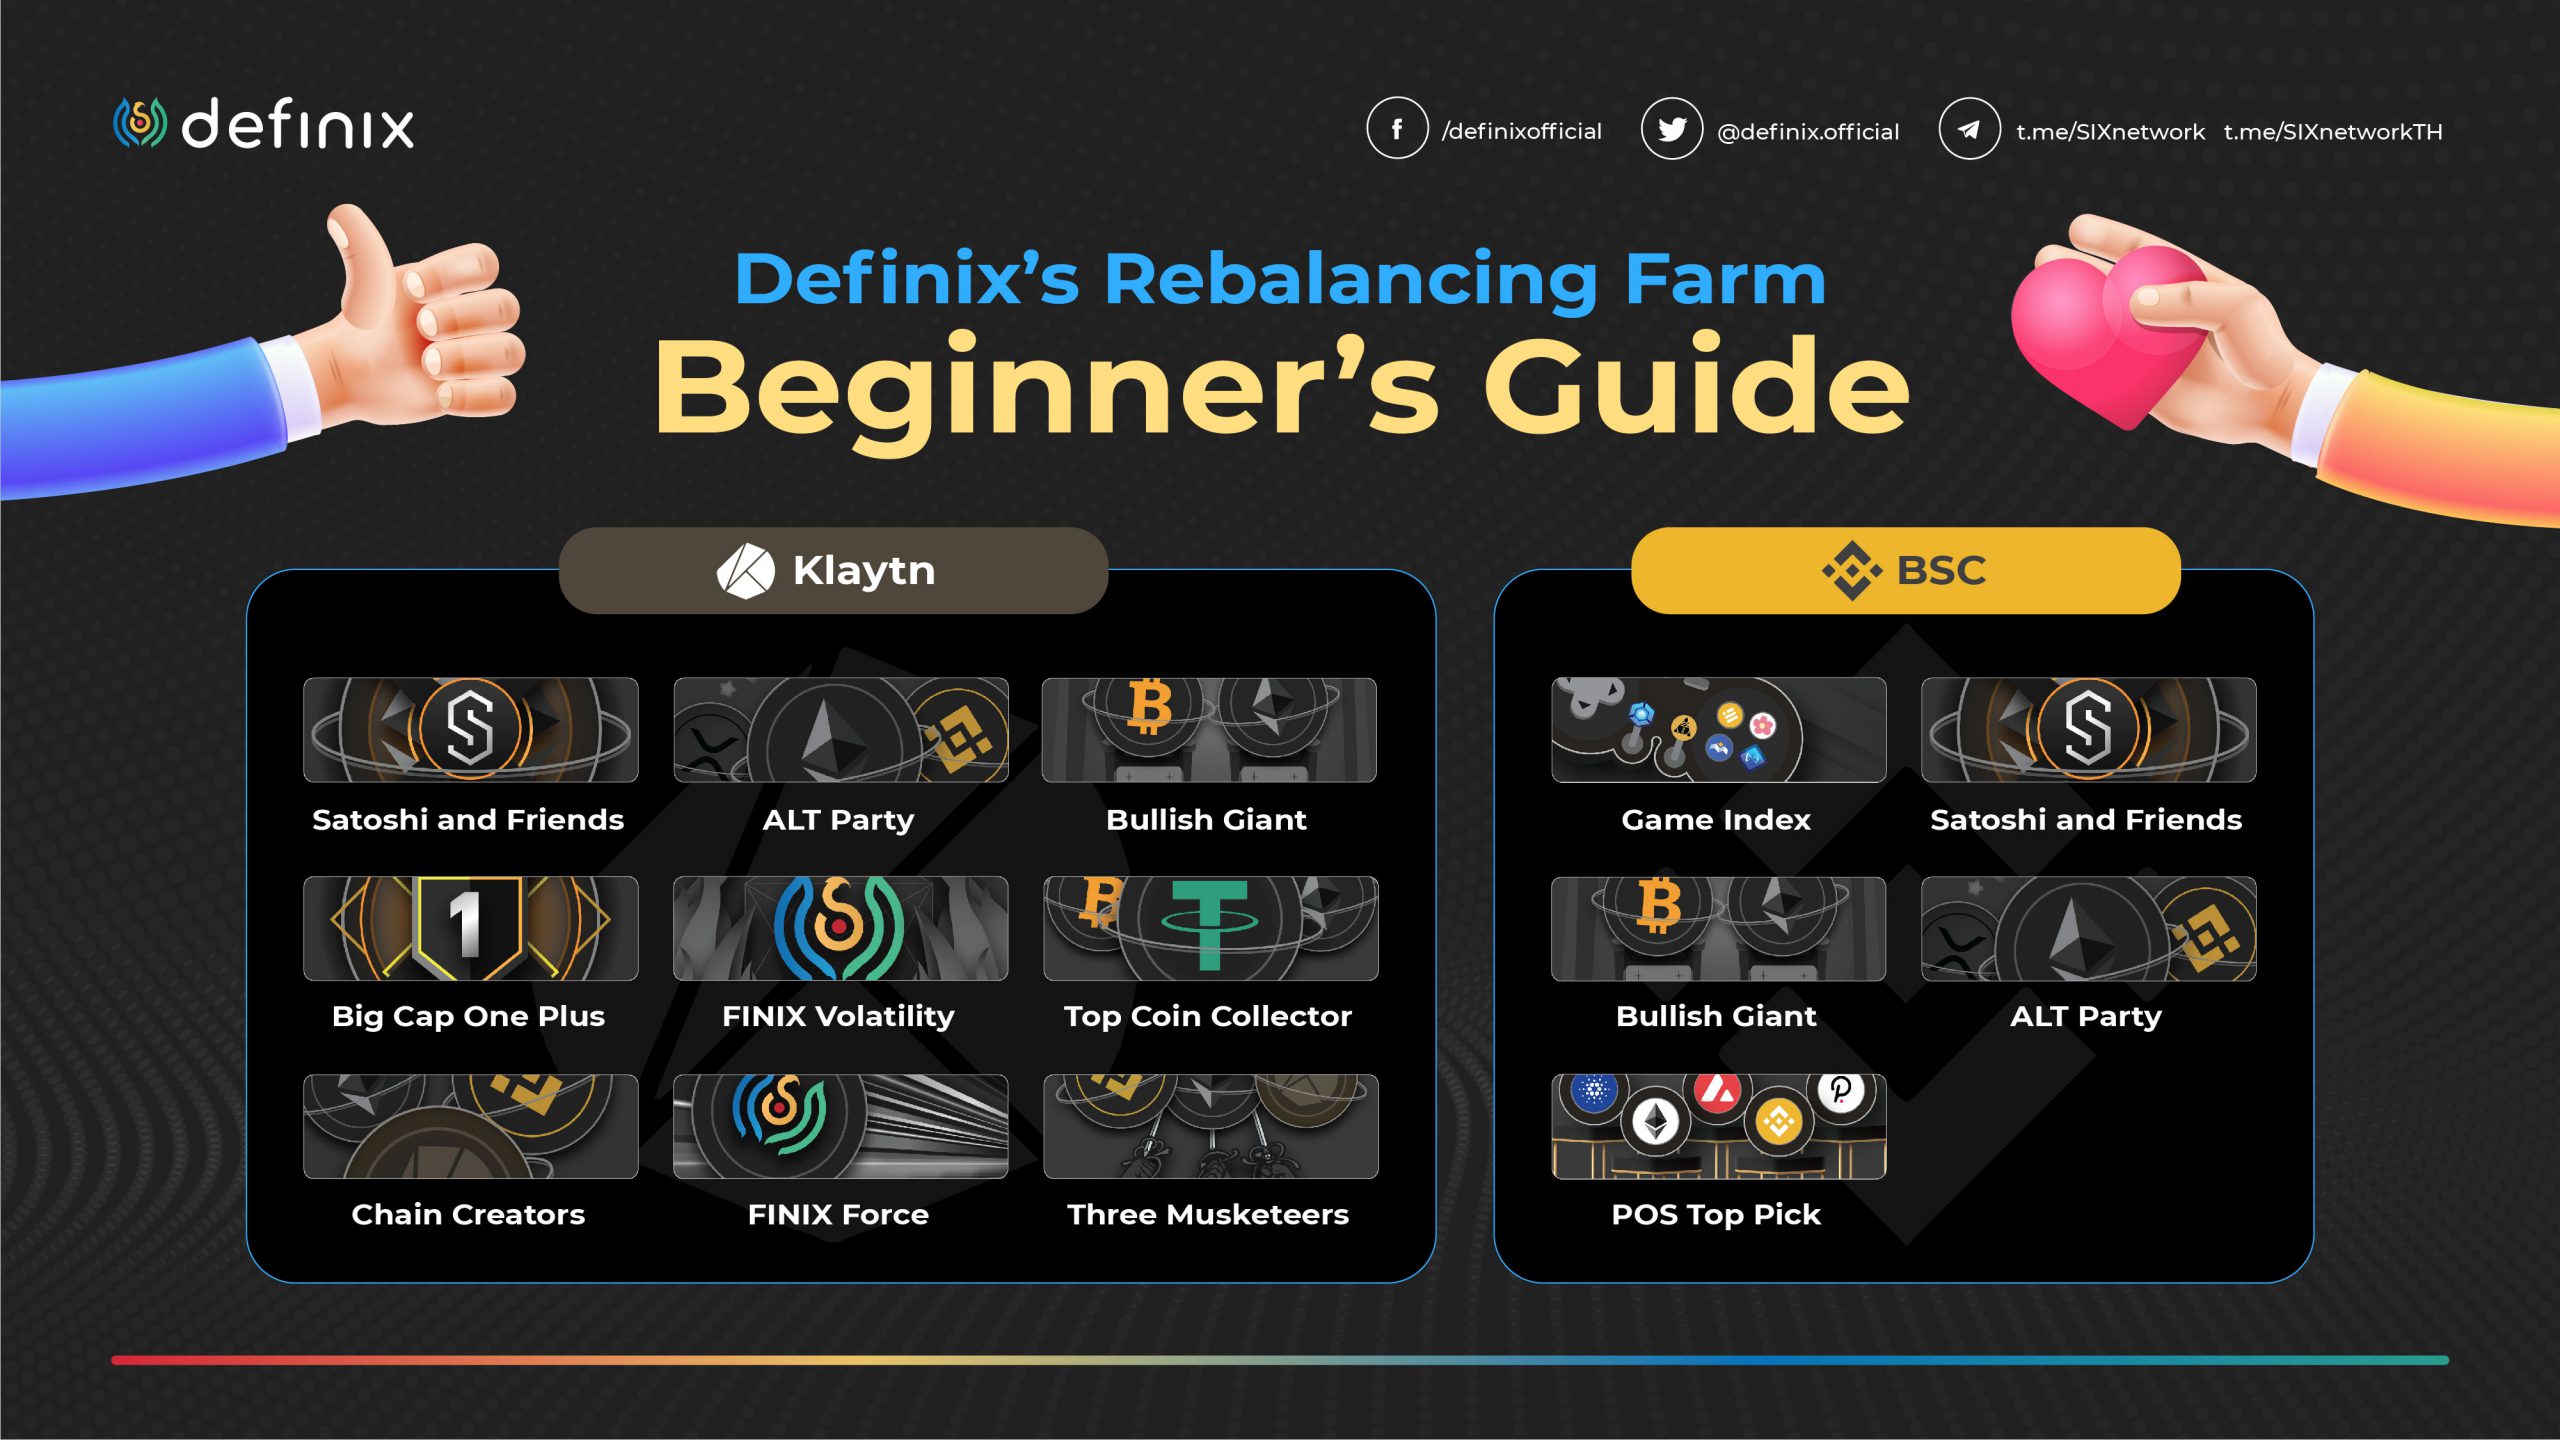 [Definix] Rebalancing Farm Beginner’s Guide